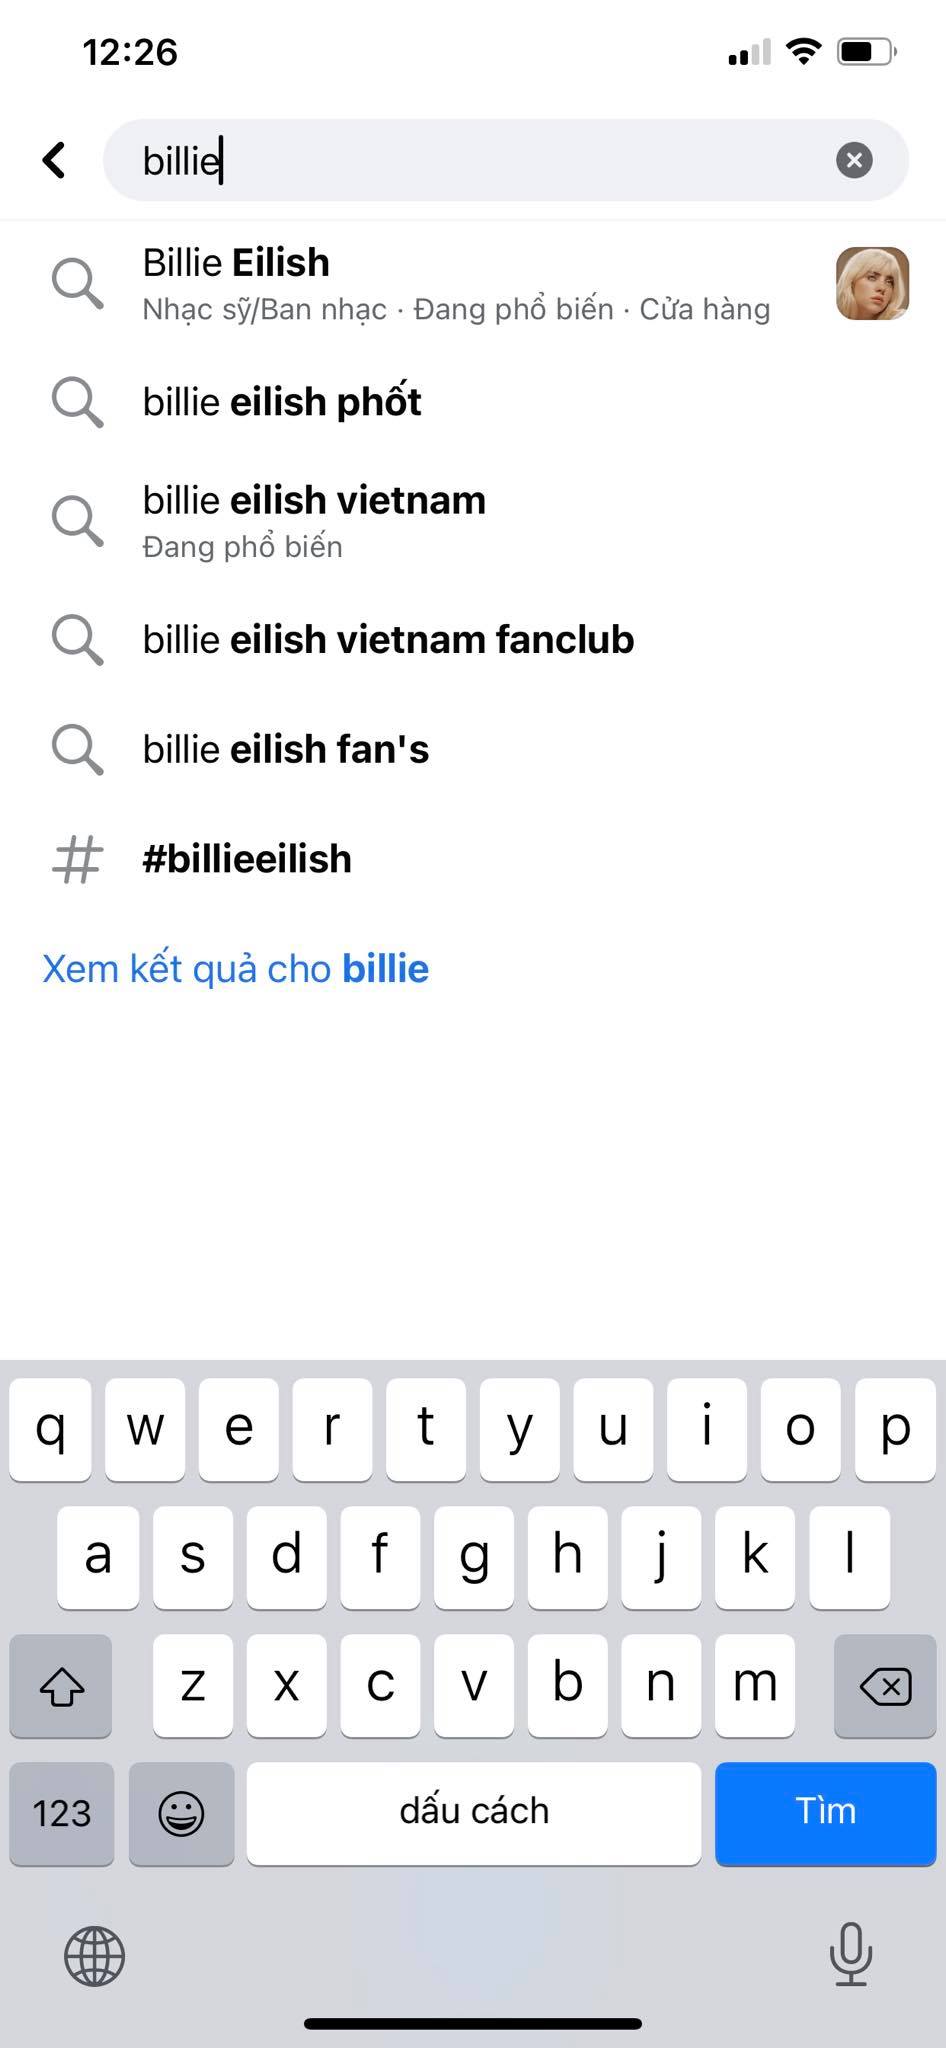 Billie Eilish lên tiếng sau phốt chế giễu người Châu Á, lượng follower lại tăng mạnh nhưng vẫn bị netizen chỉ trích gay gắt! - Ảnh 6.